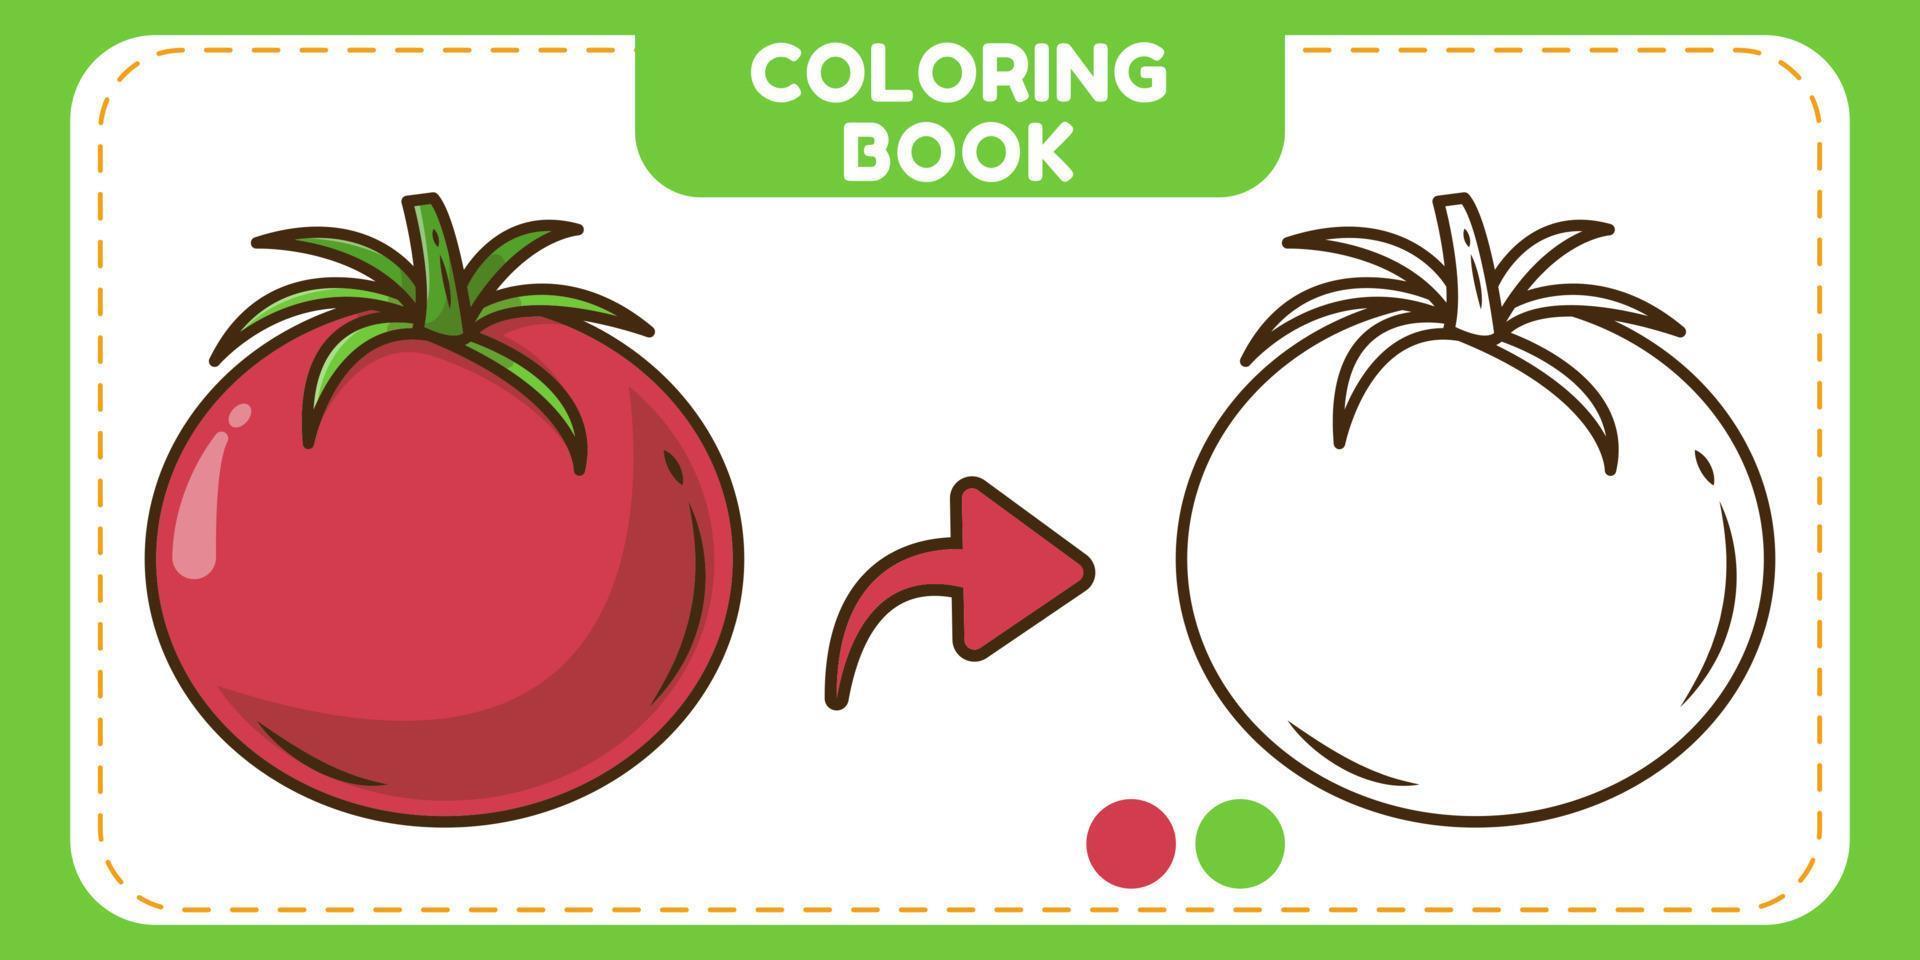 libro de colorear de doodle de dibujos animados dibujados a mano de tomate colorido y blanco y negro para niños vector